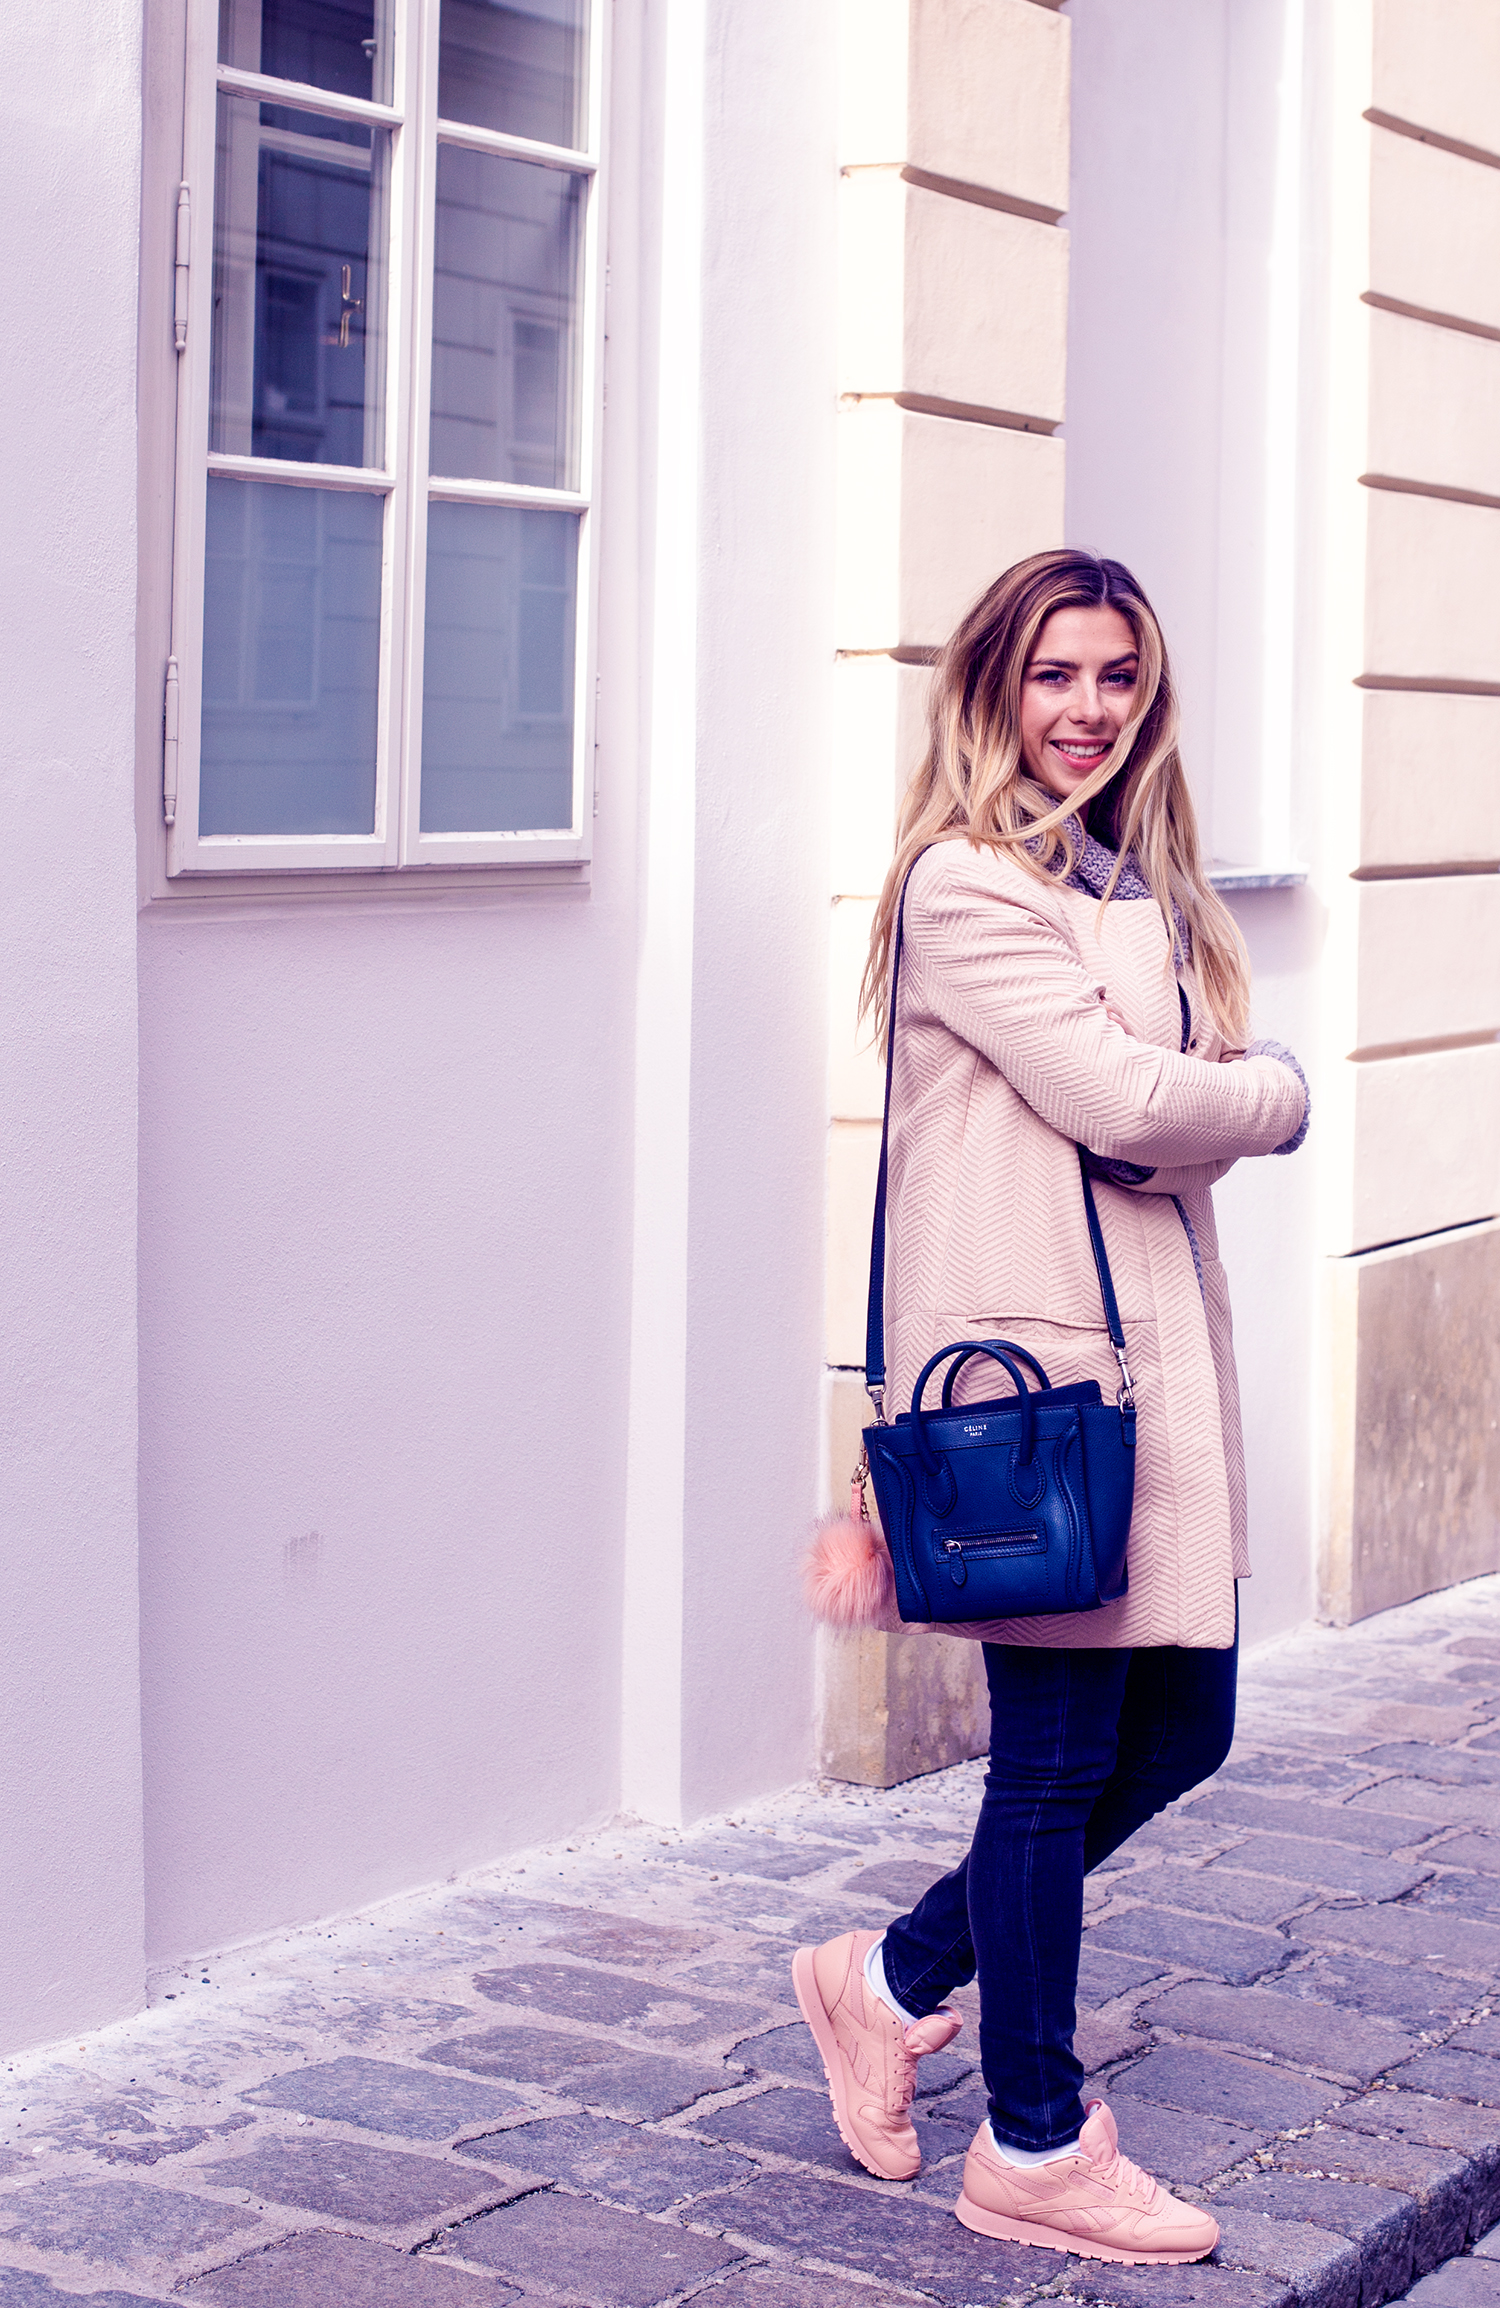 Wien_Fashion_Blogger_Luisa_Lion_blaue_Celine_Nano_Tasche